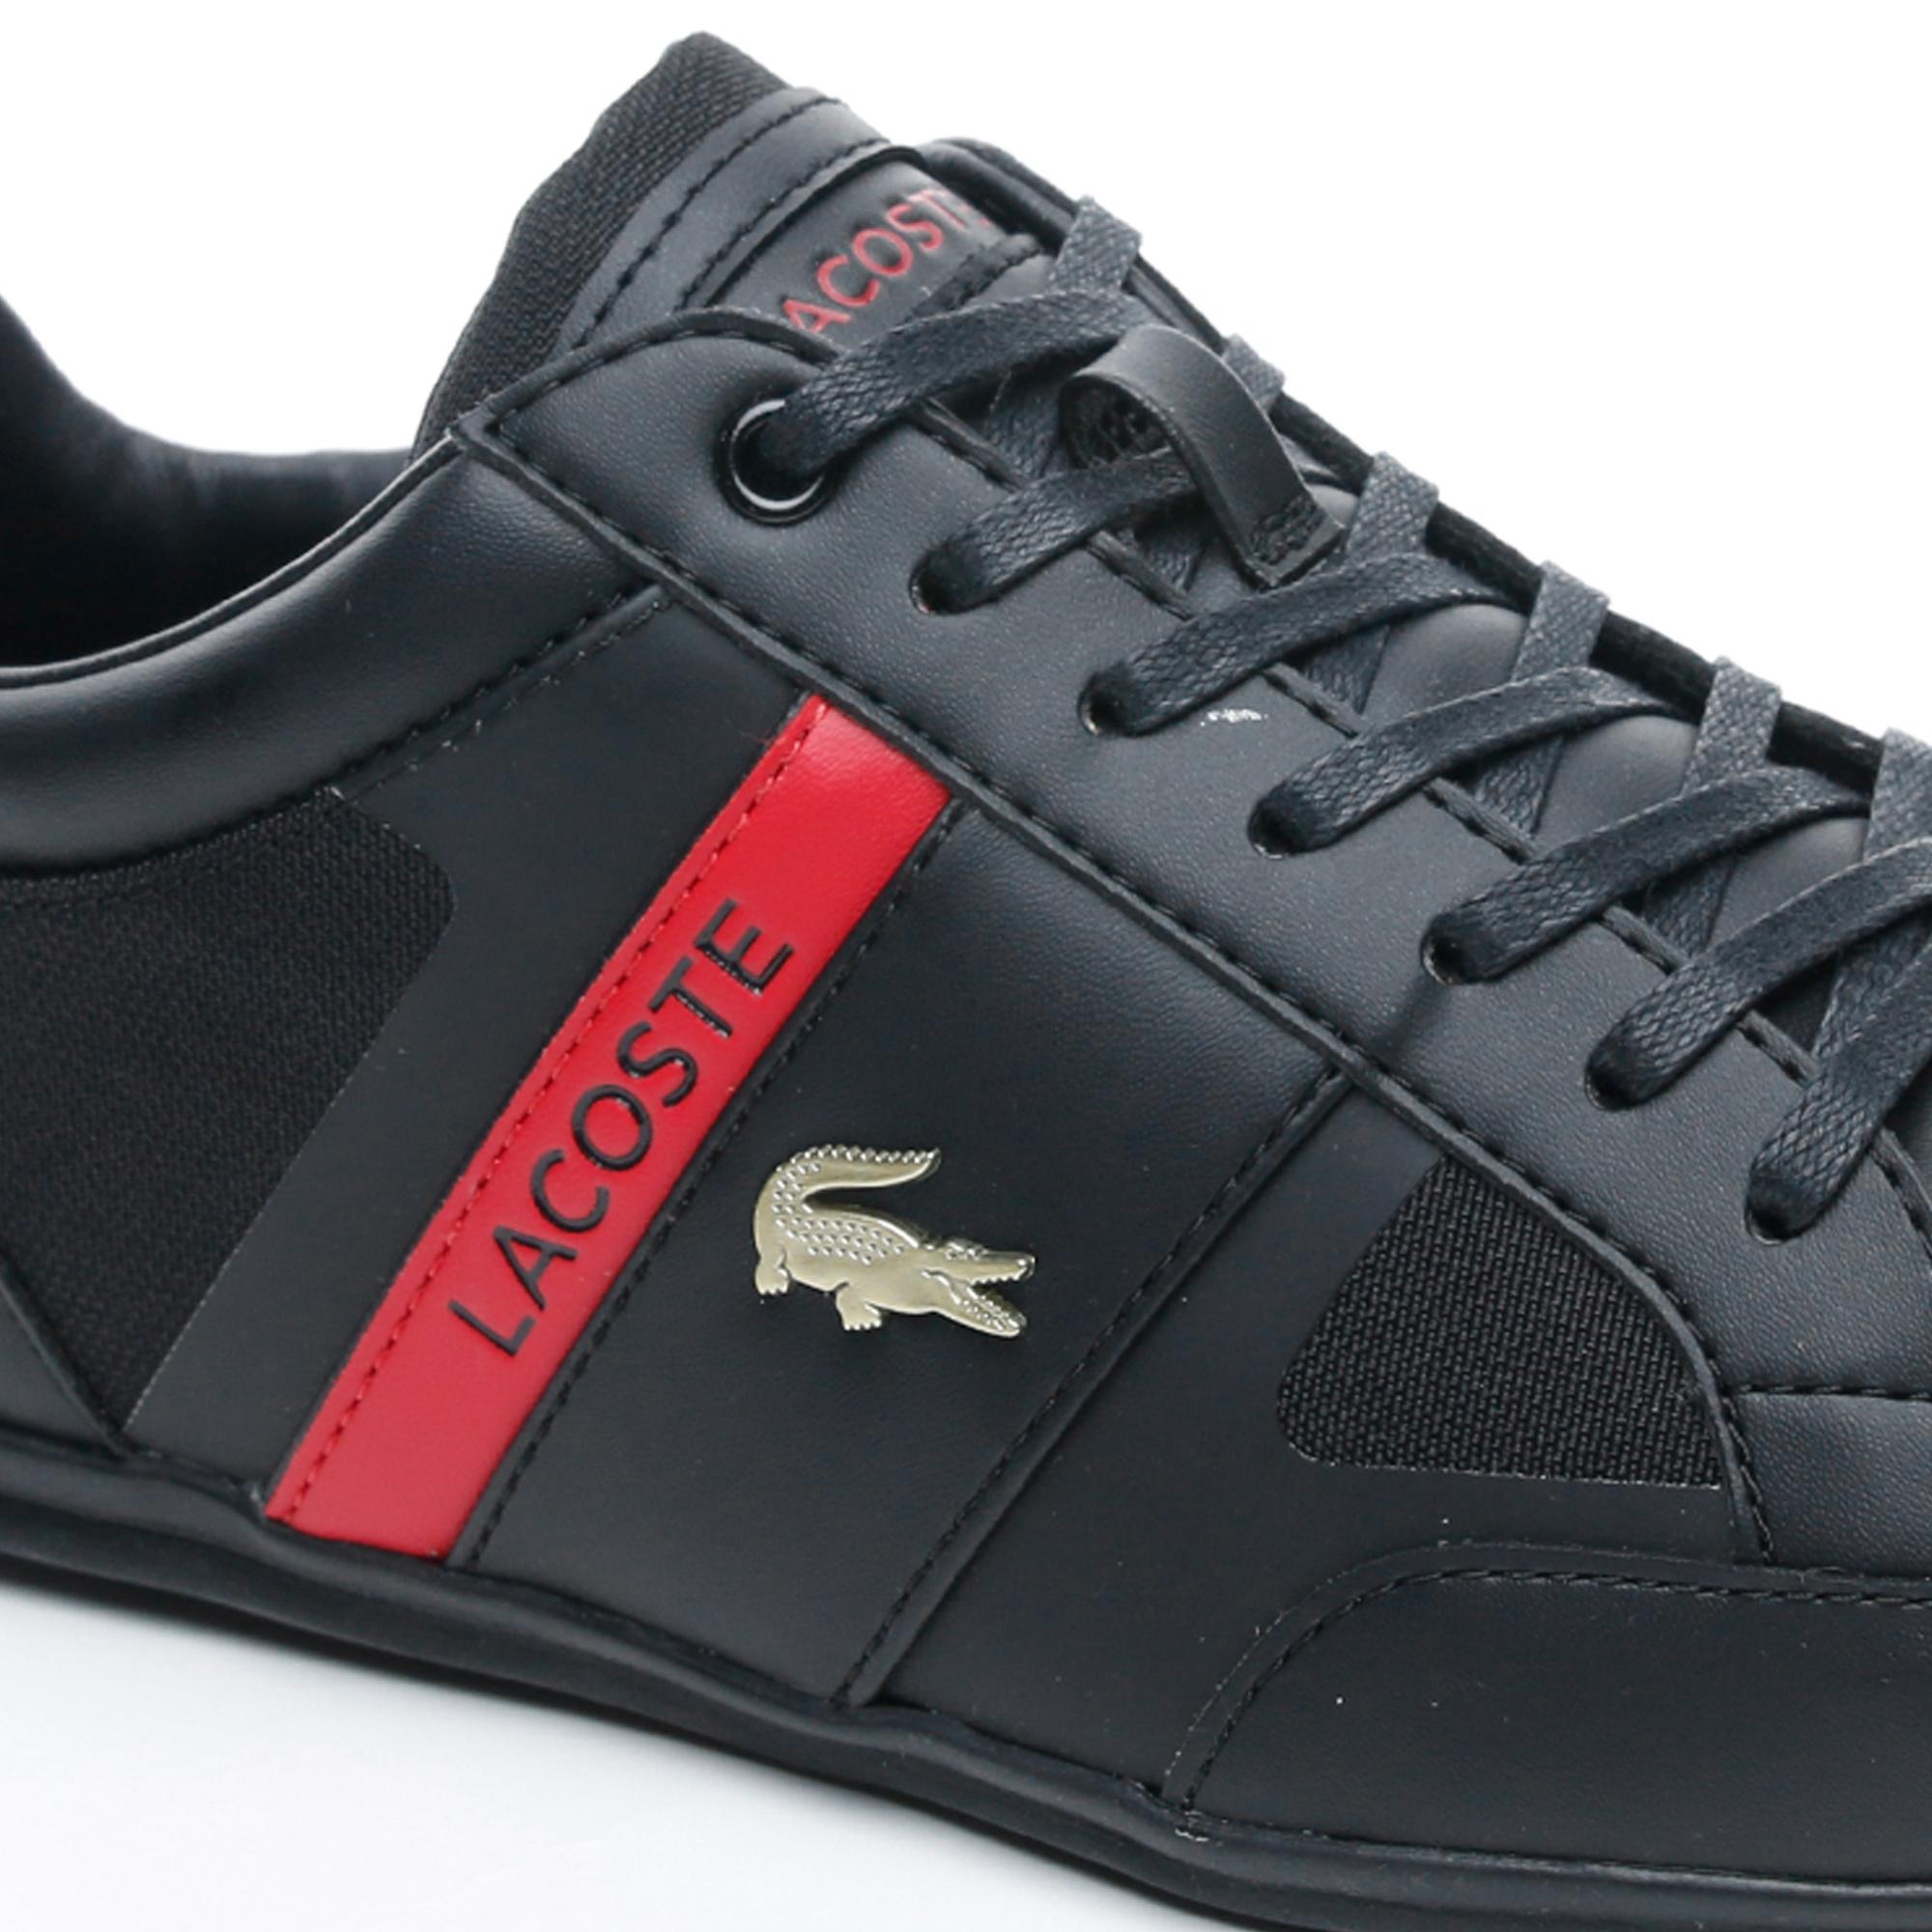 Lacoste Chaymon Tech 0120 3 Cma Erkek Siyah - Kırmızı Casual Ayakkabı. 6